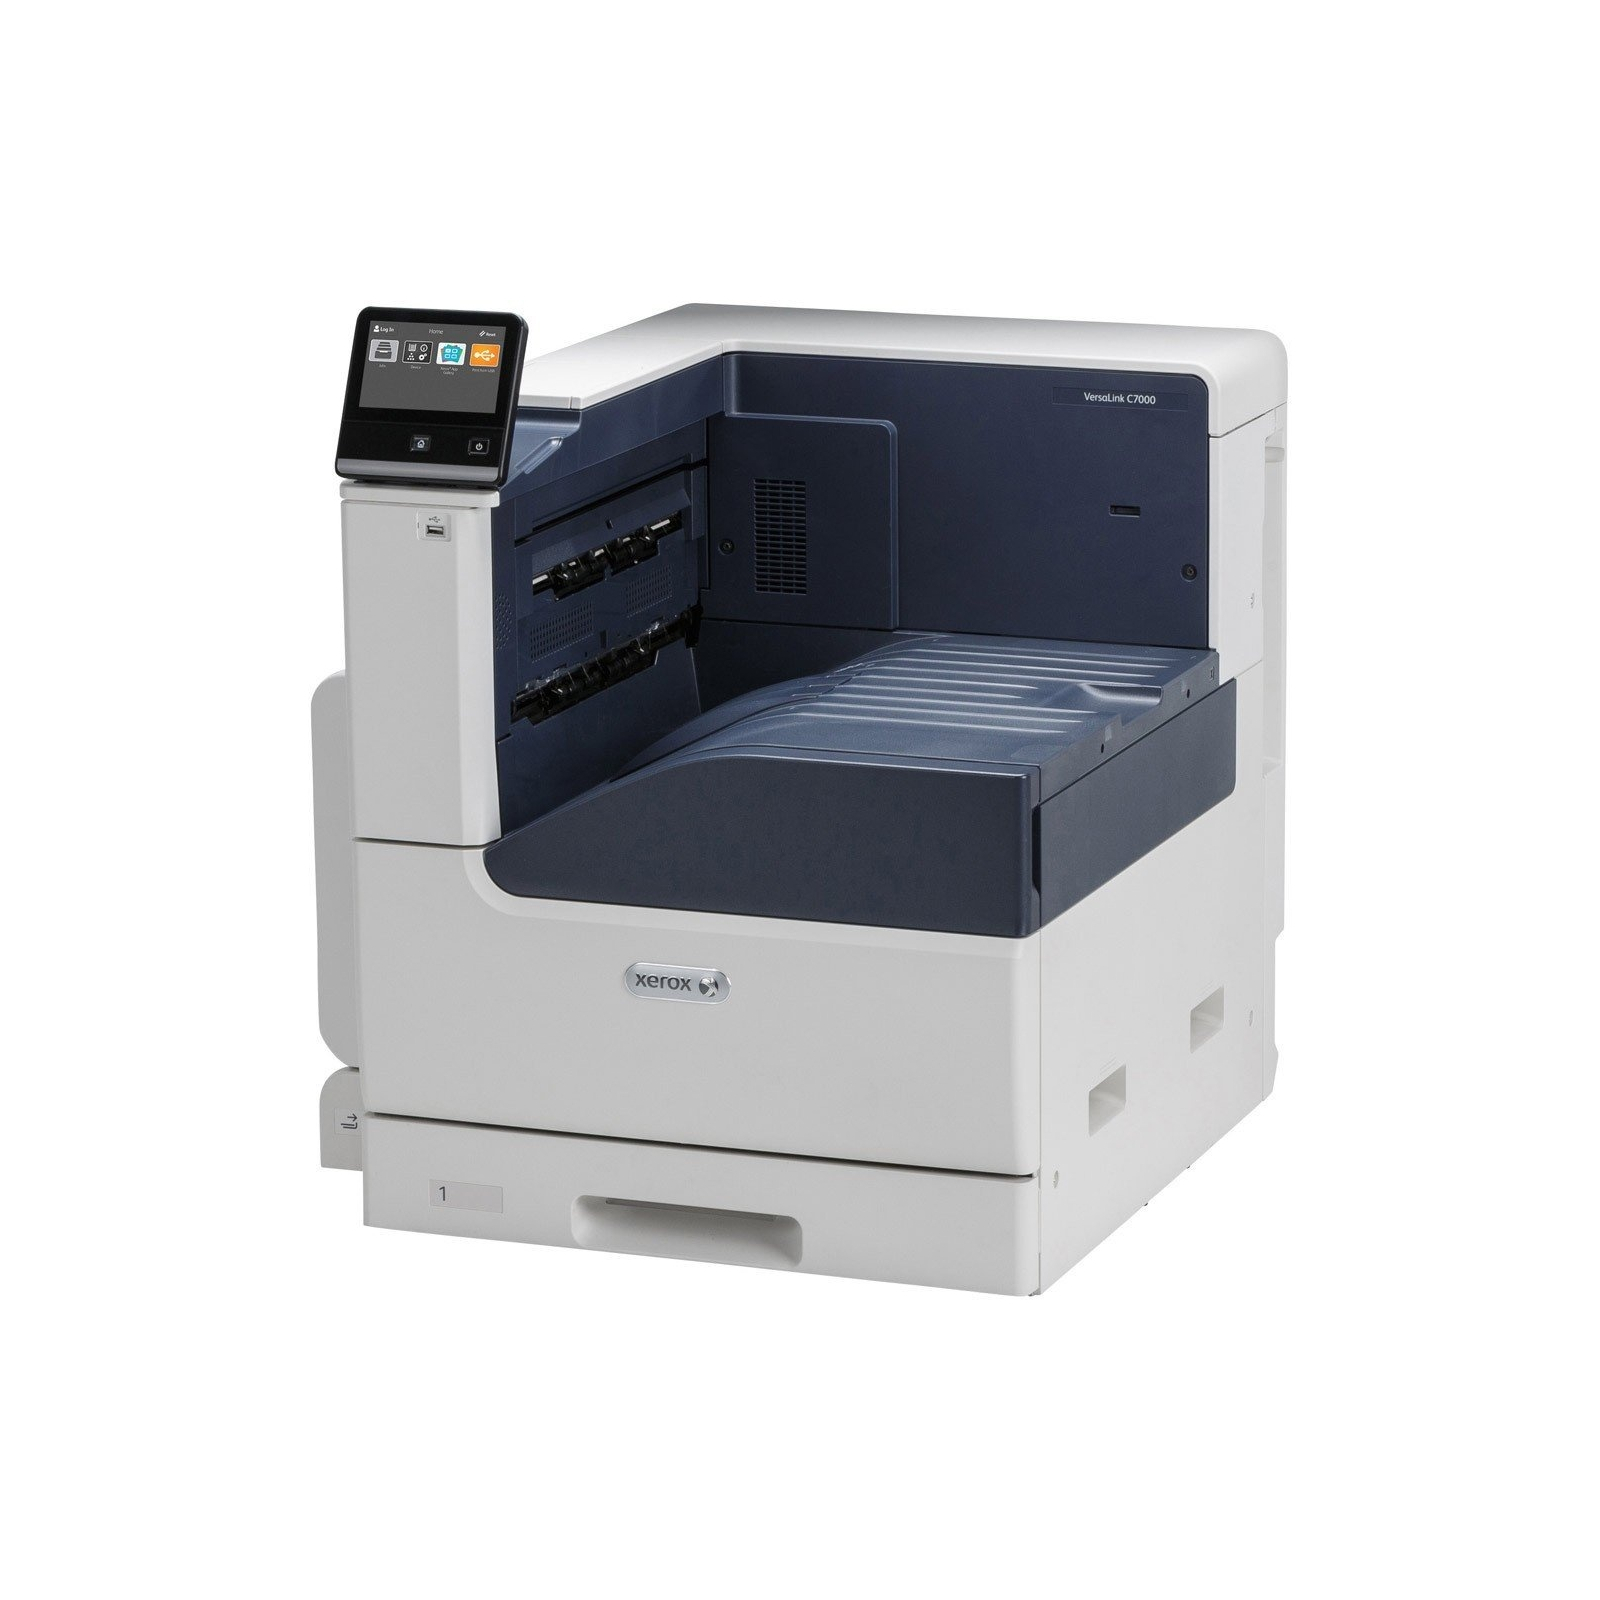 Лазерный принтер Xerox C7000V_DN изображение 2